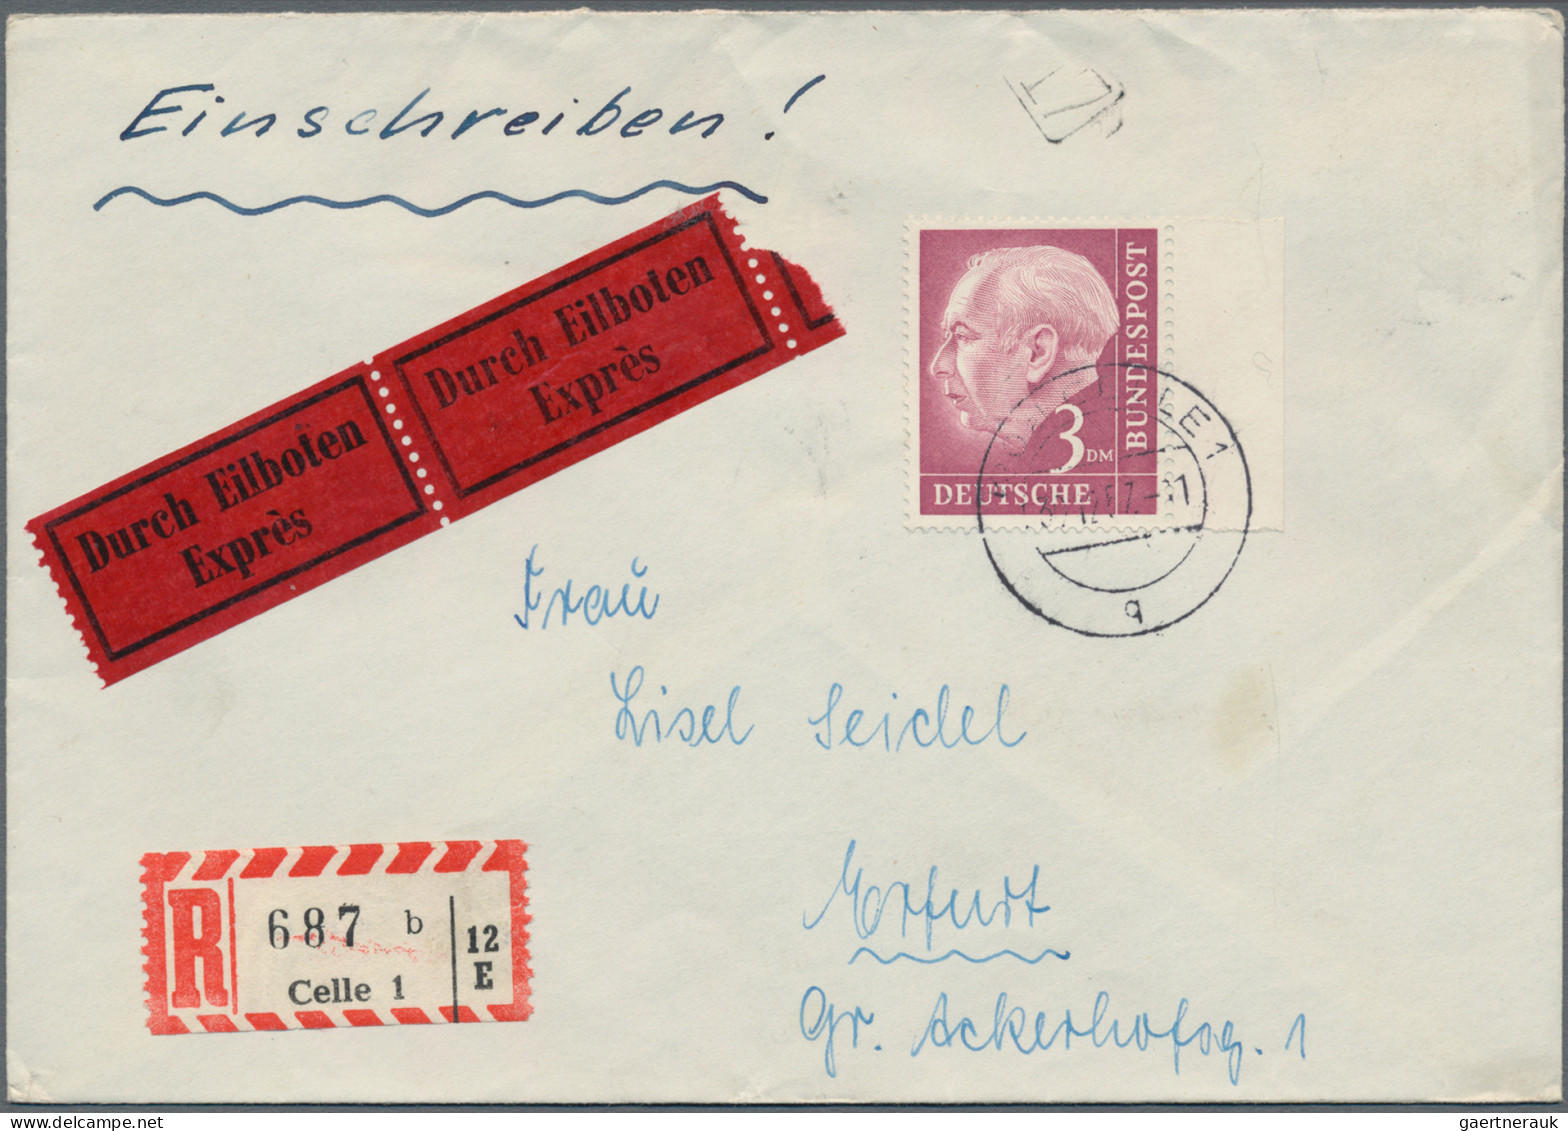 Bundesrepublik Deutschland: 1954, HEUSS I, umfangreiche Sammlung mit ca. 350 Bel